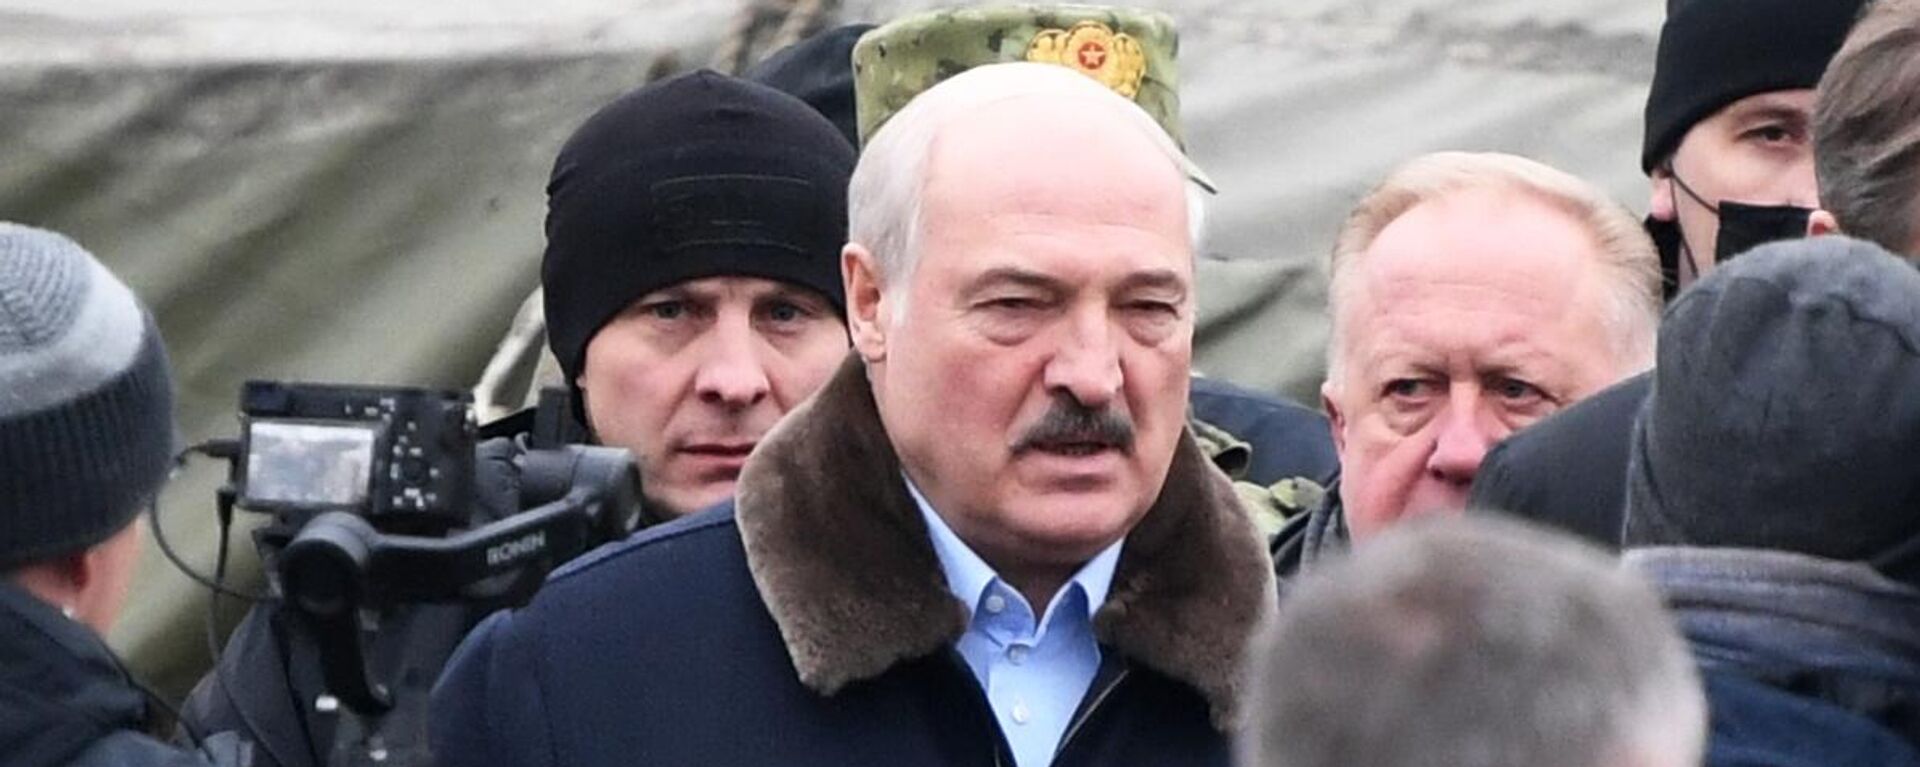 Президент Белоруссии А. Лукашенко посетил лагерь мигрантов на границе - Sputnik Молдова, 1920, 26.11.2021